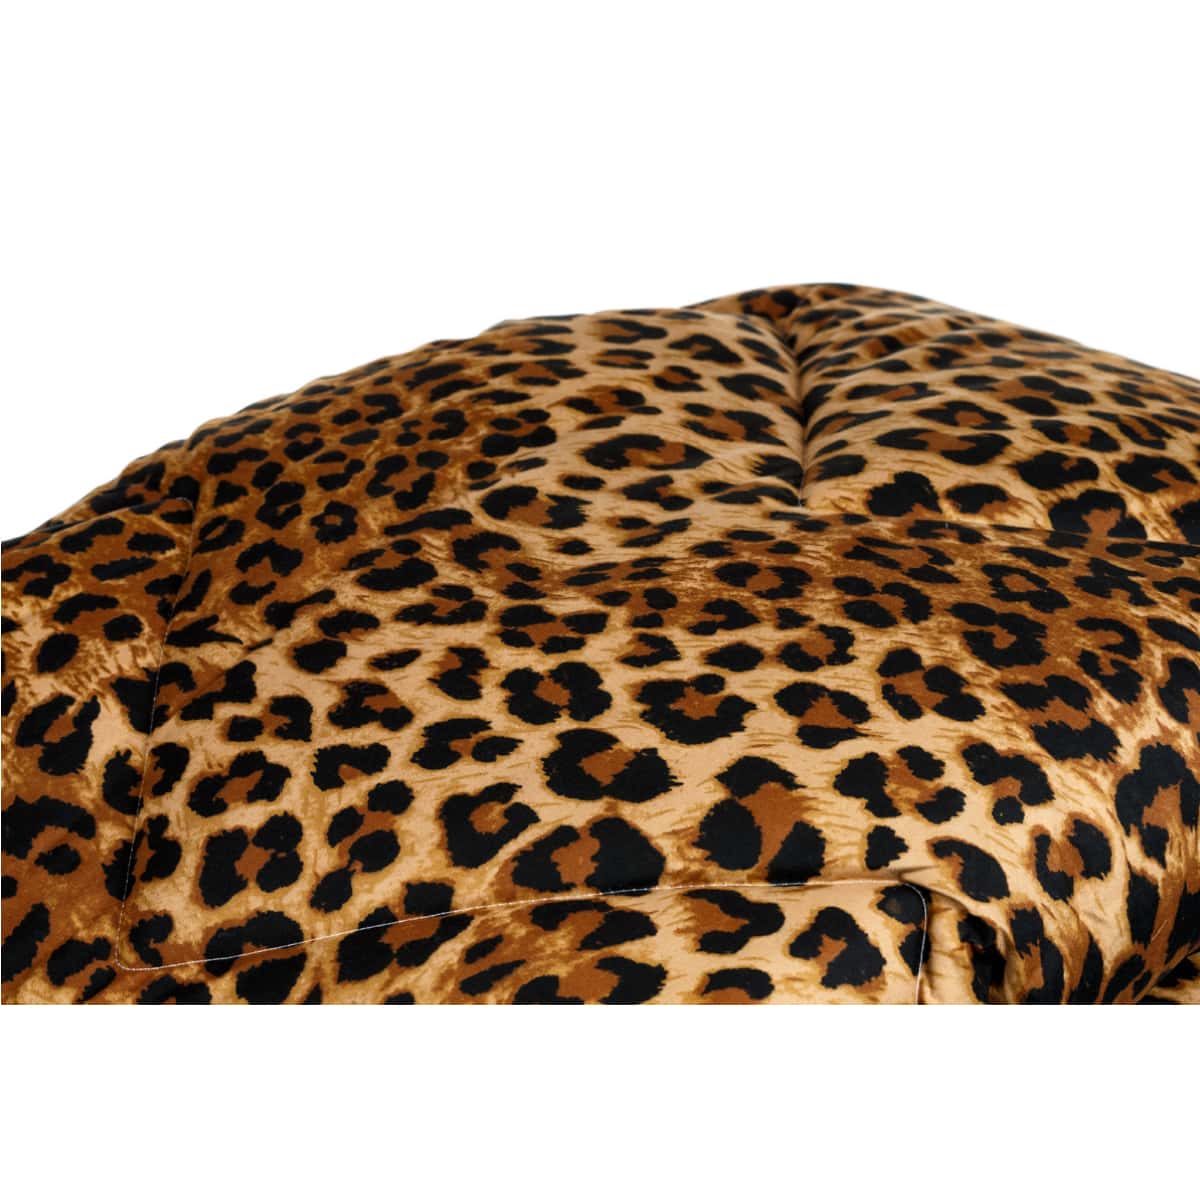 Zelesta Wunderbett Jaguar Haut Leopard Print Deckbett Krimpt Nicht